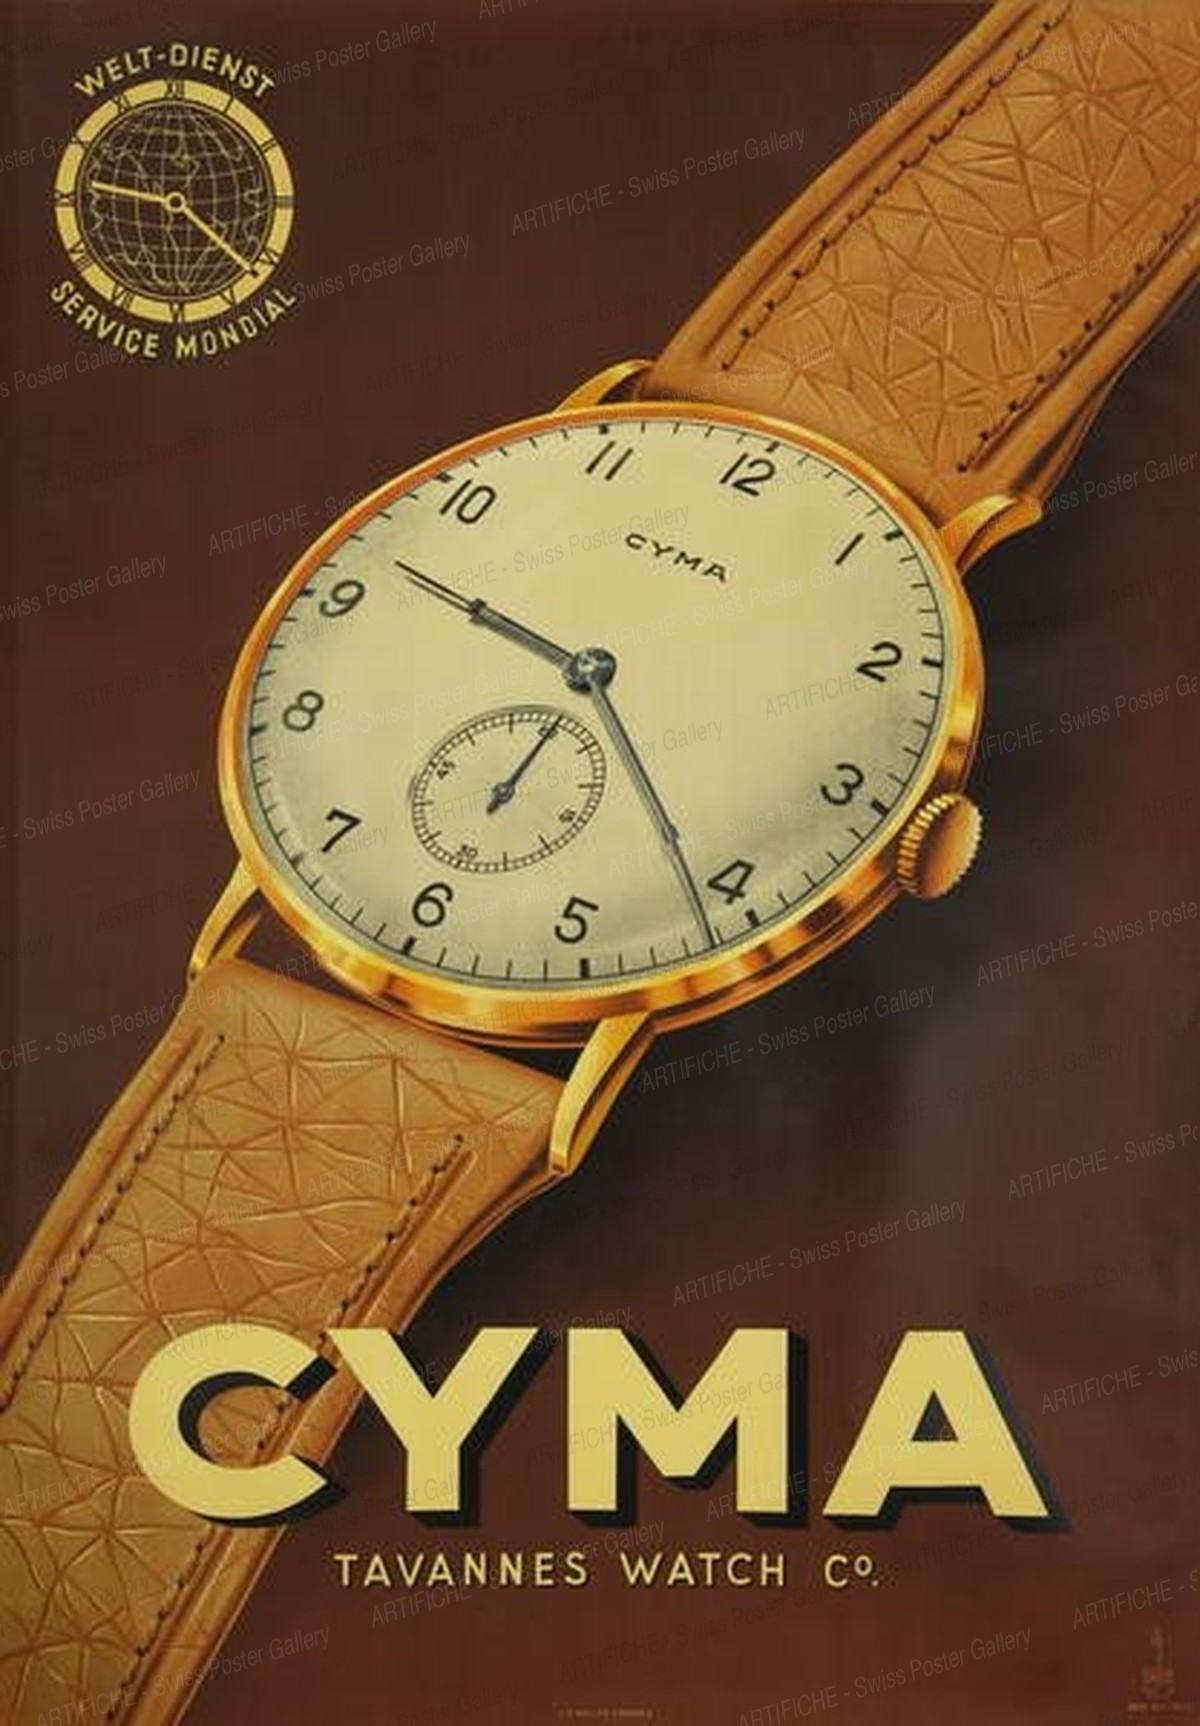 Cyma Tavannes Watch Co., A. Galib